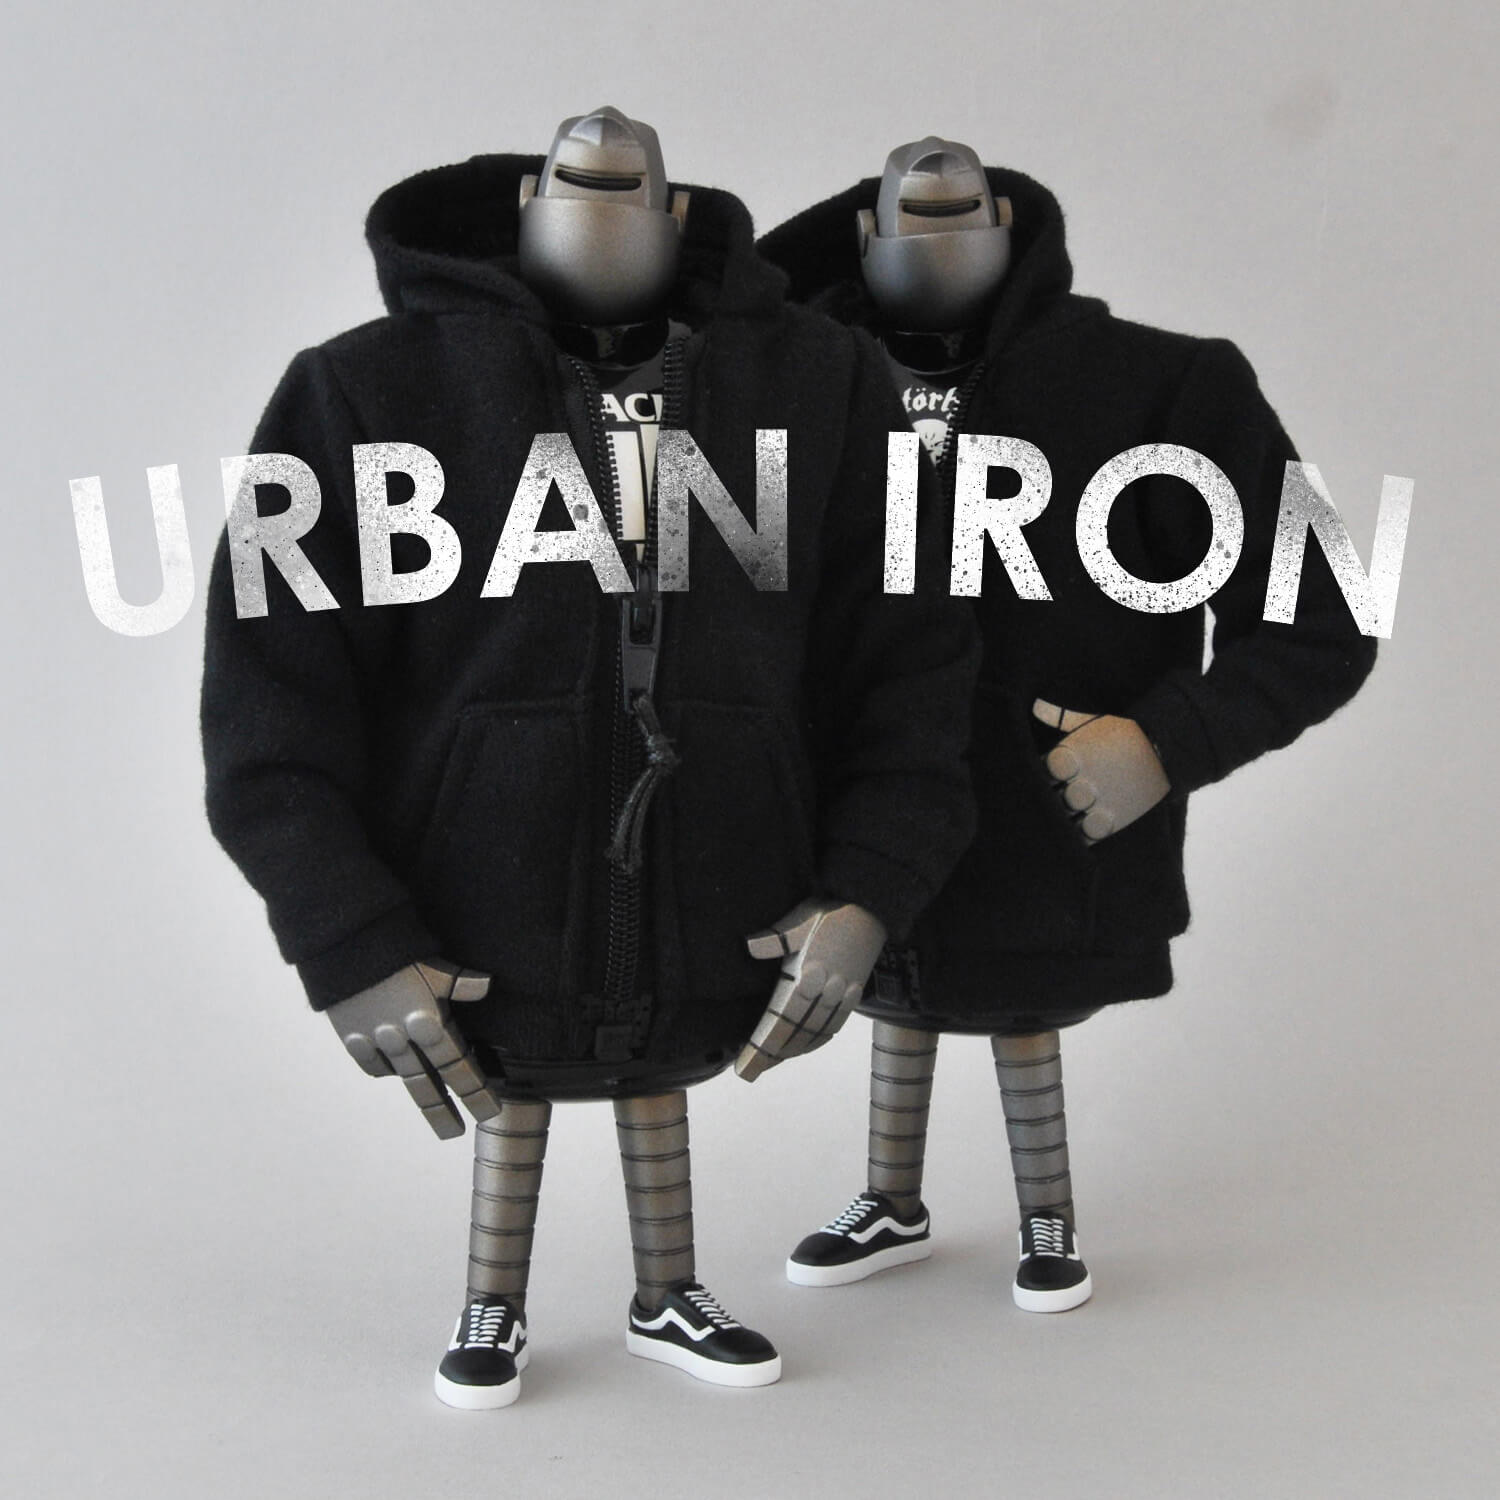 Urban Iron 018